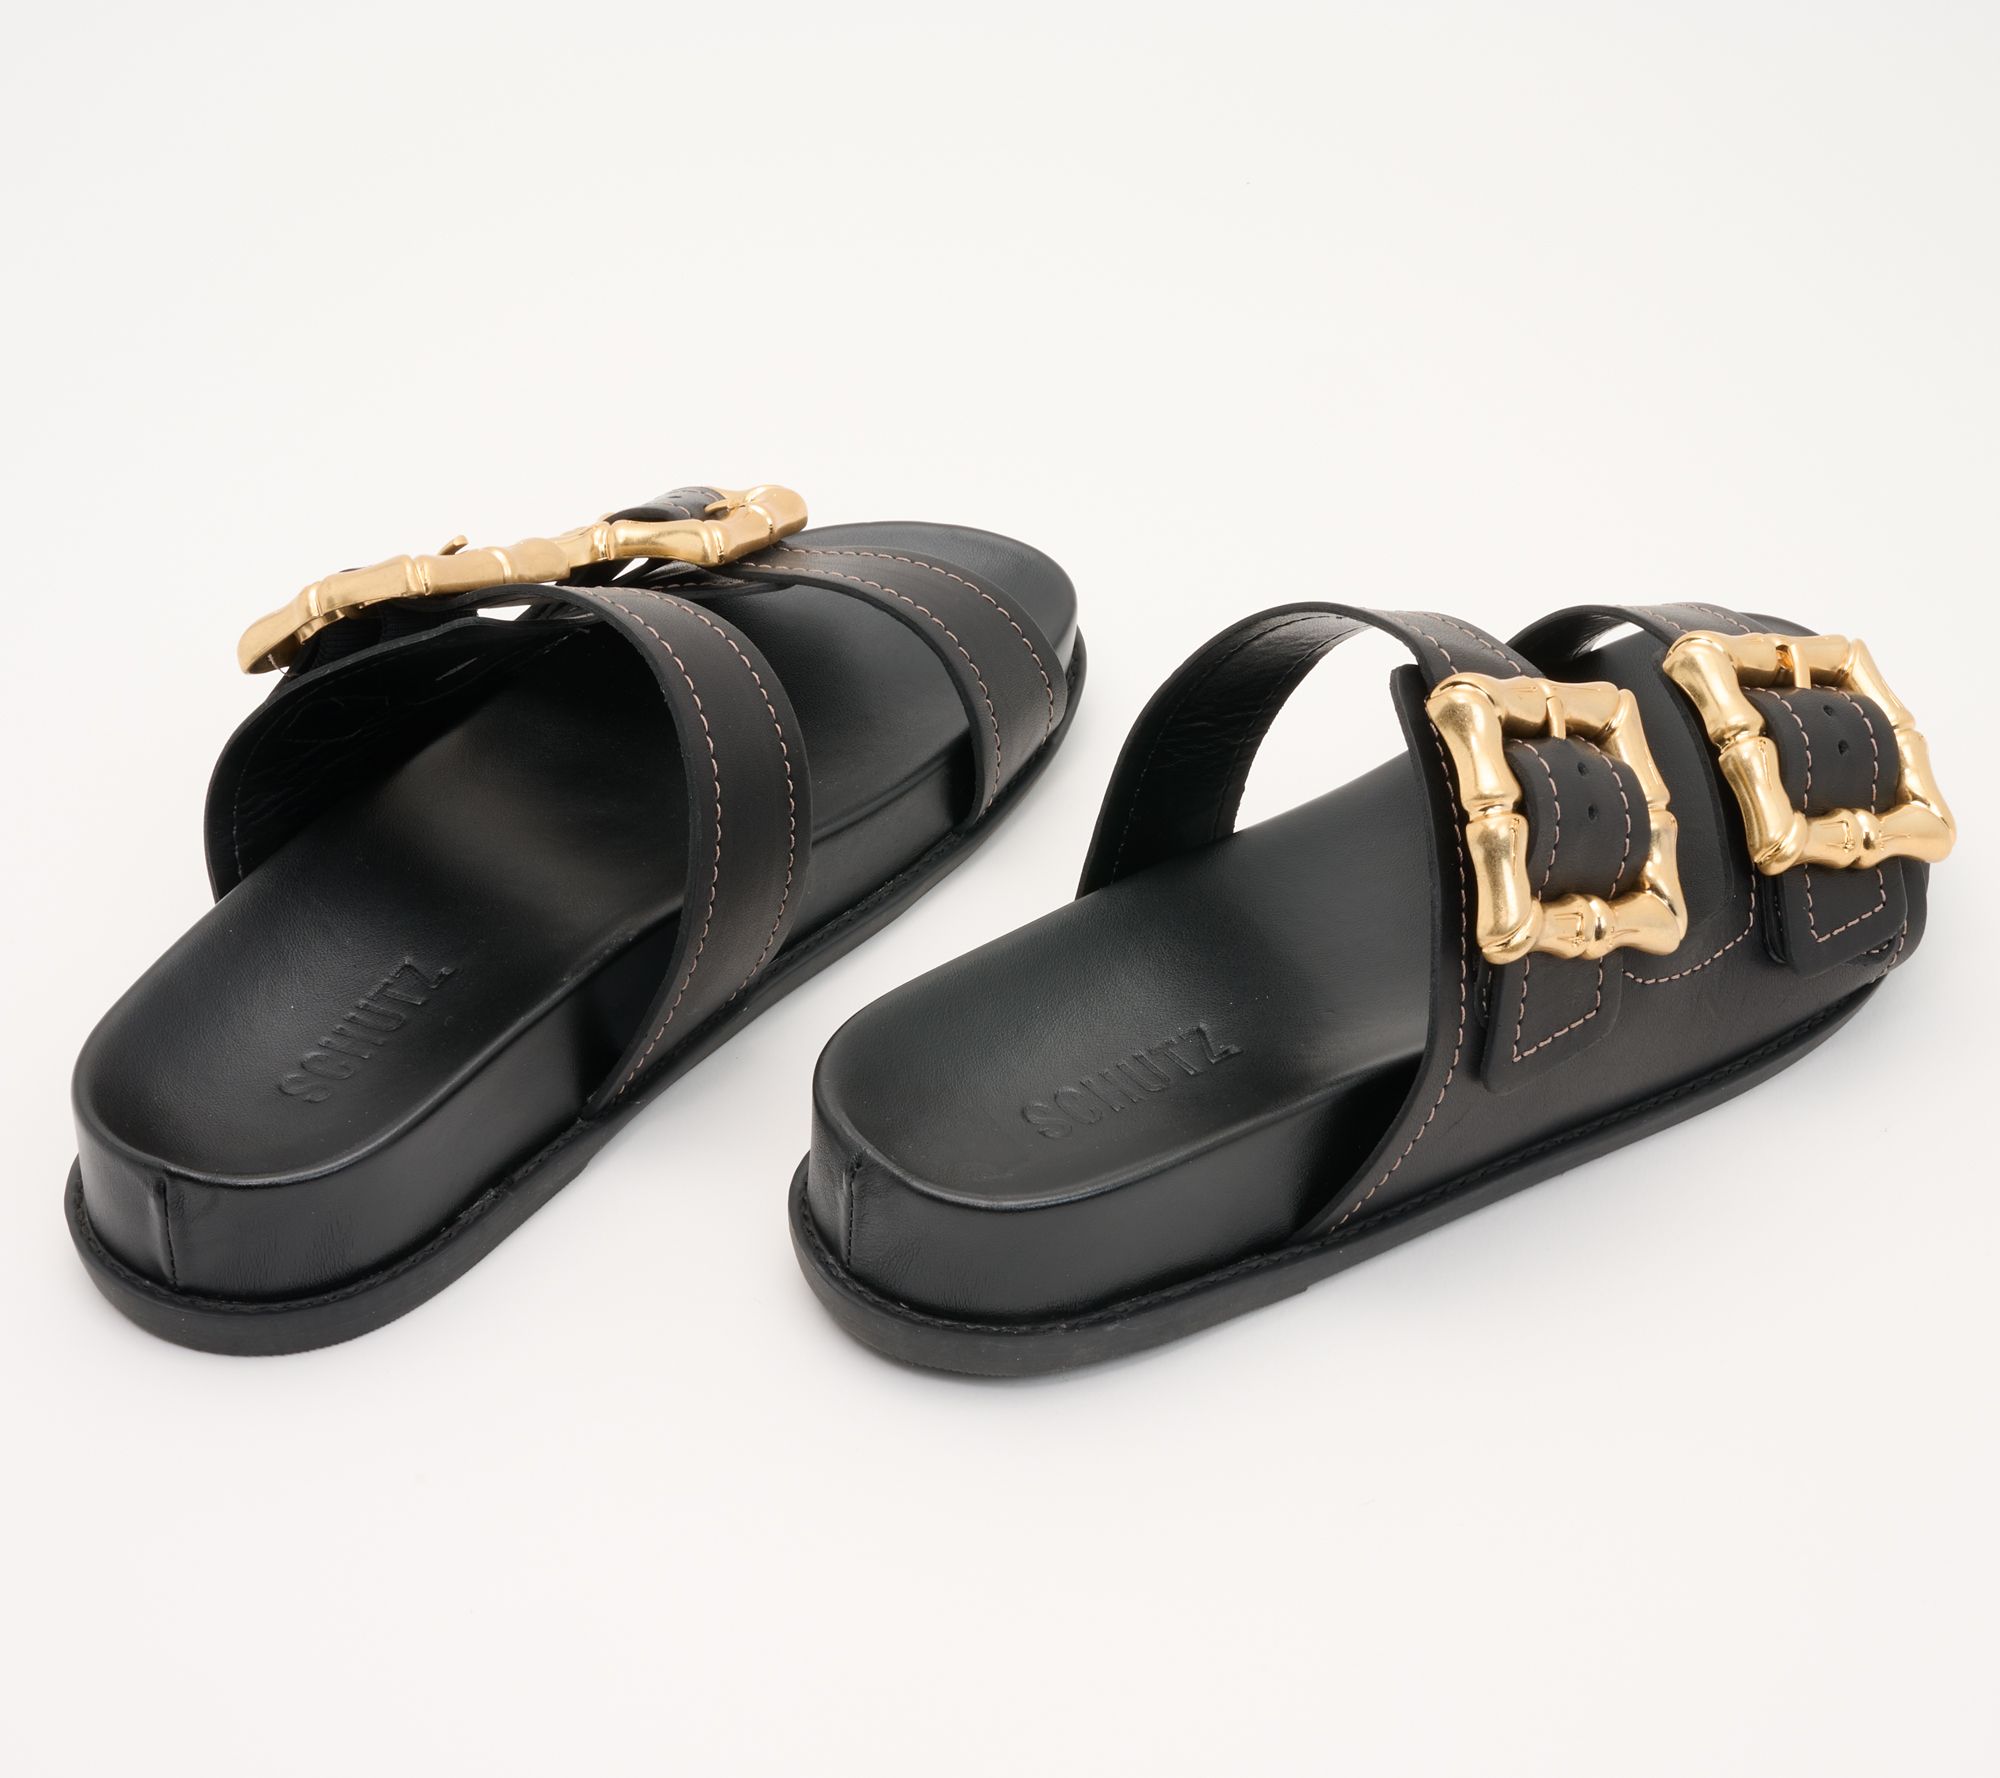 Schutz Leather Buckle Sandals - Enola Sporty - QVC.com